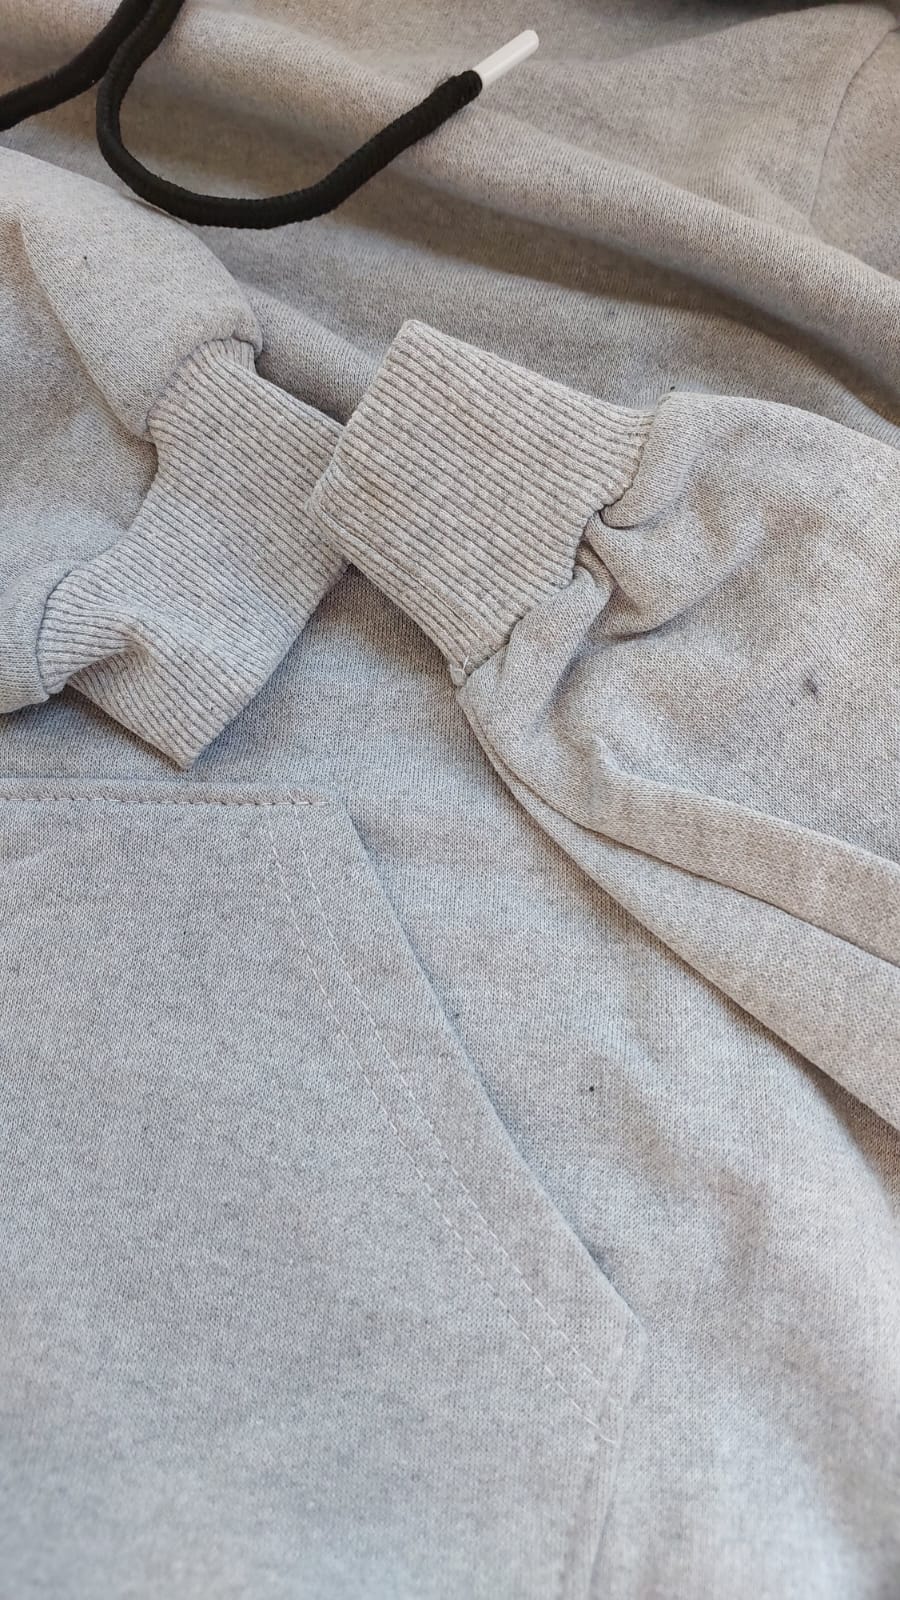 sweatshirt tasarla uygun fiyat yuvarlak yaka iki iplik 14